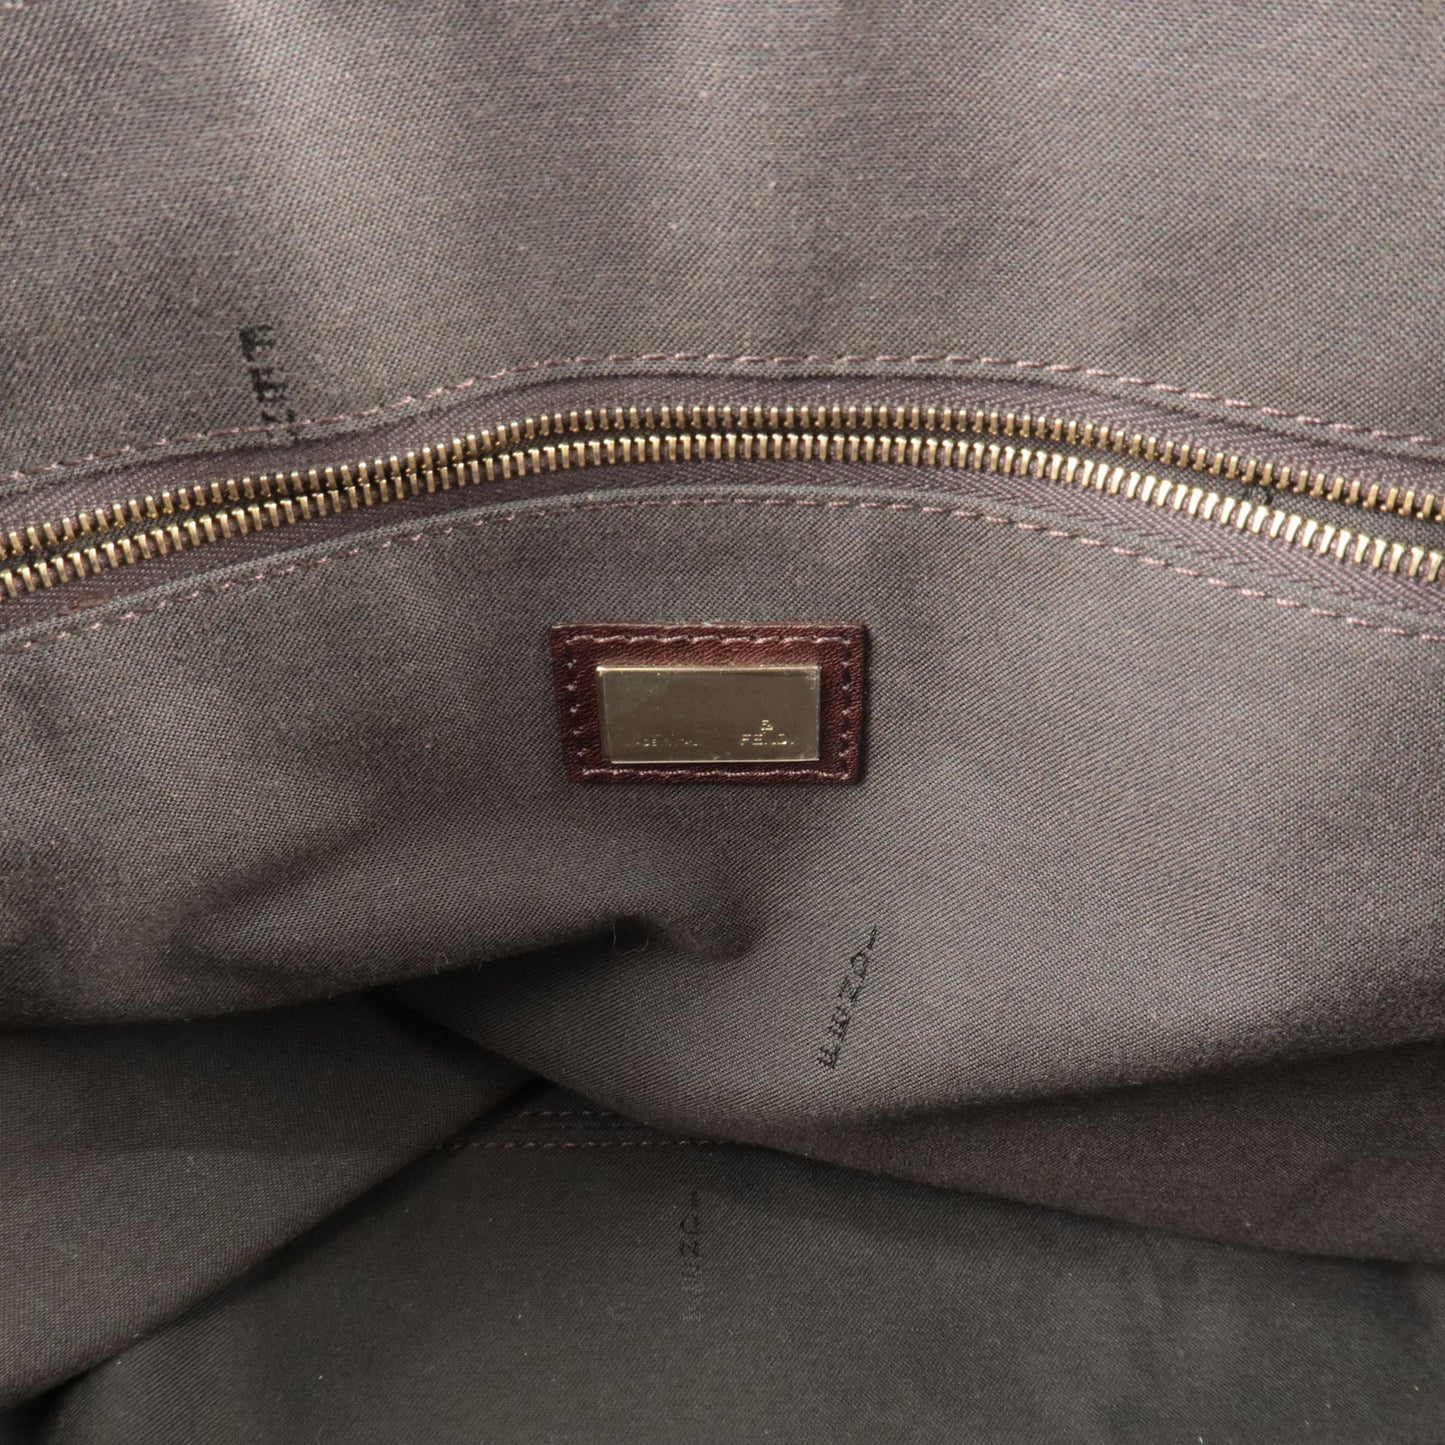 FENDI Zucchino Canvas Leather Shoulder Bag Beige Brown 8BN188